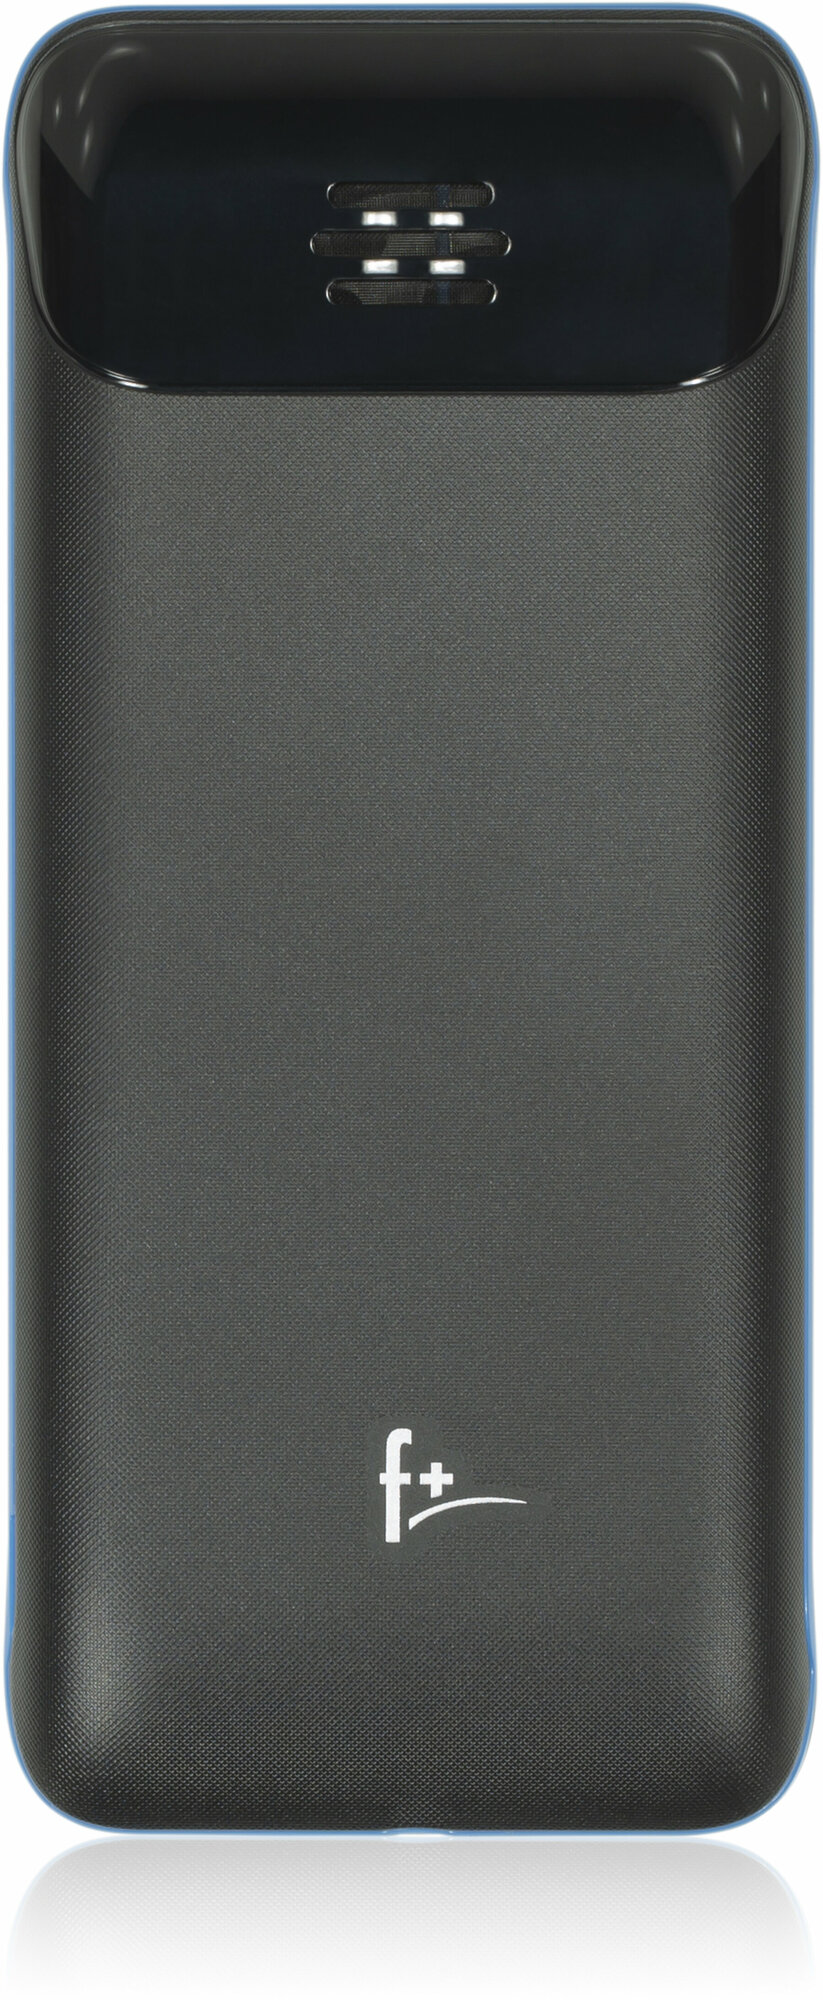 Мобильный телефон (F+ B170 Black)